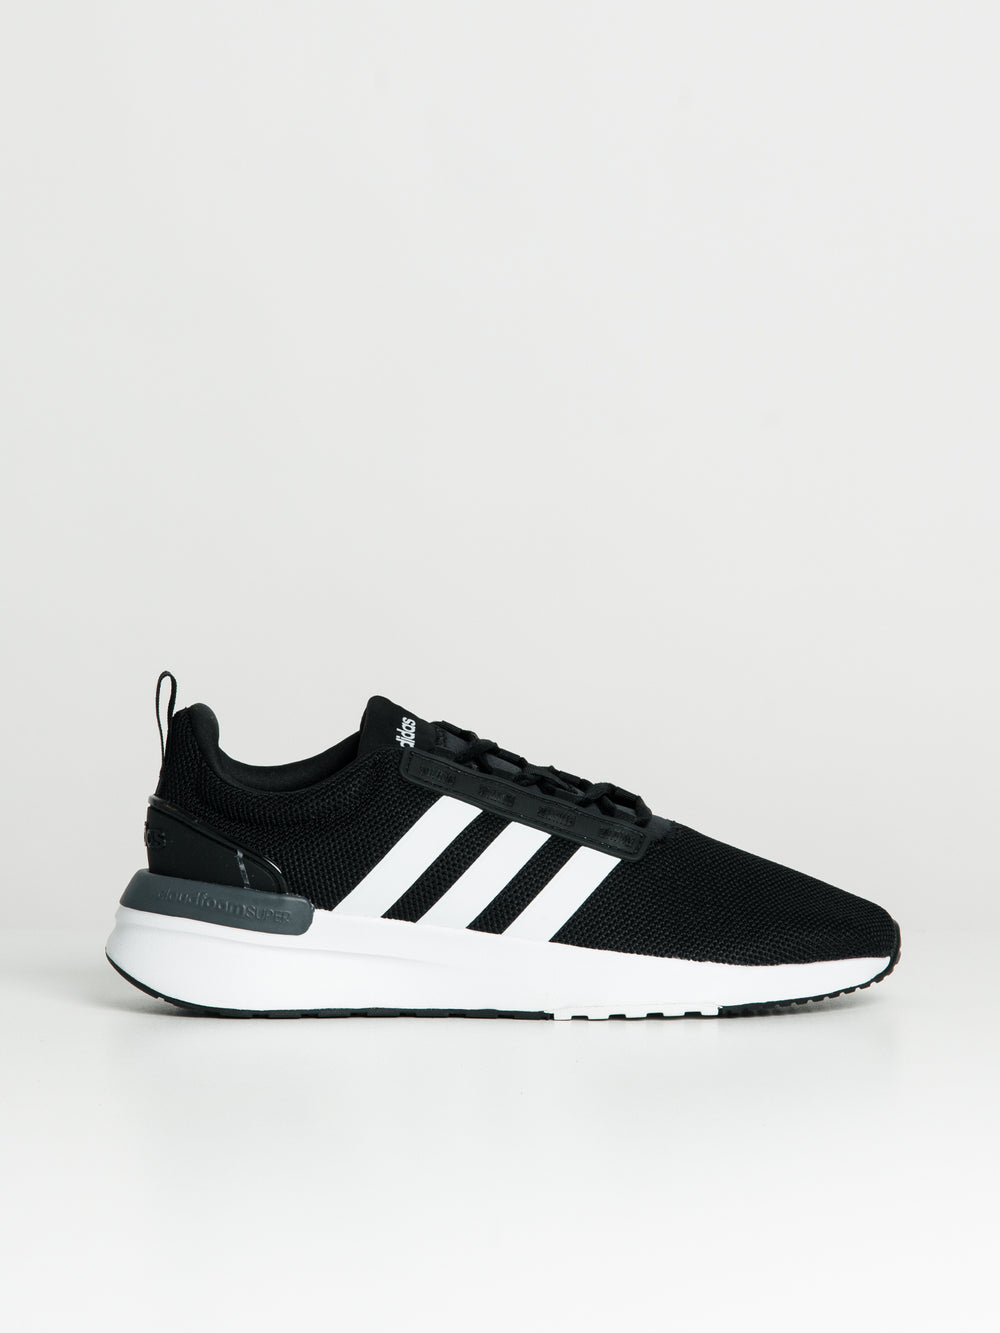 Adidas – Campus 00s Grey/Black | Highsnobiety Shop